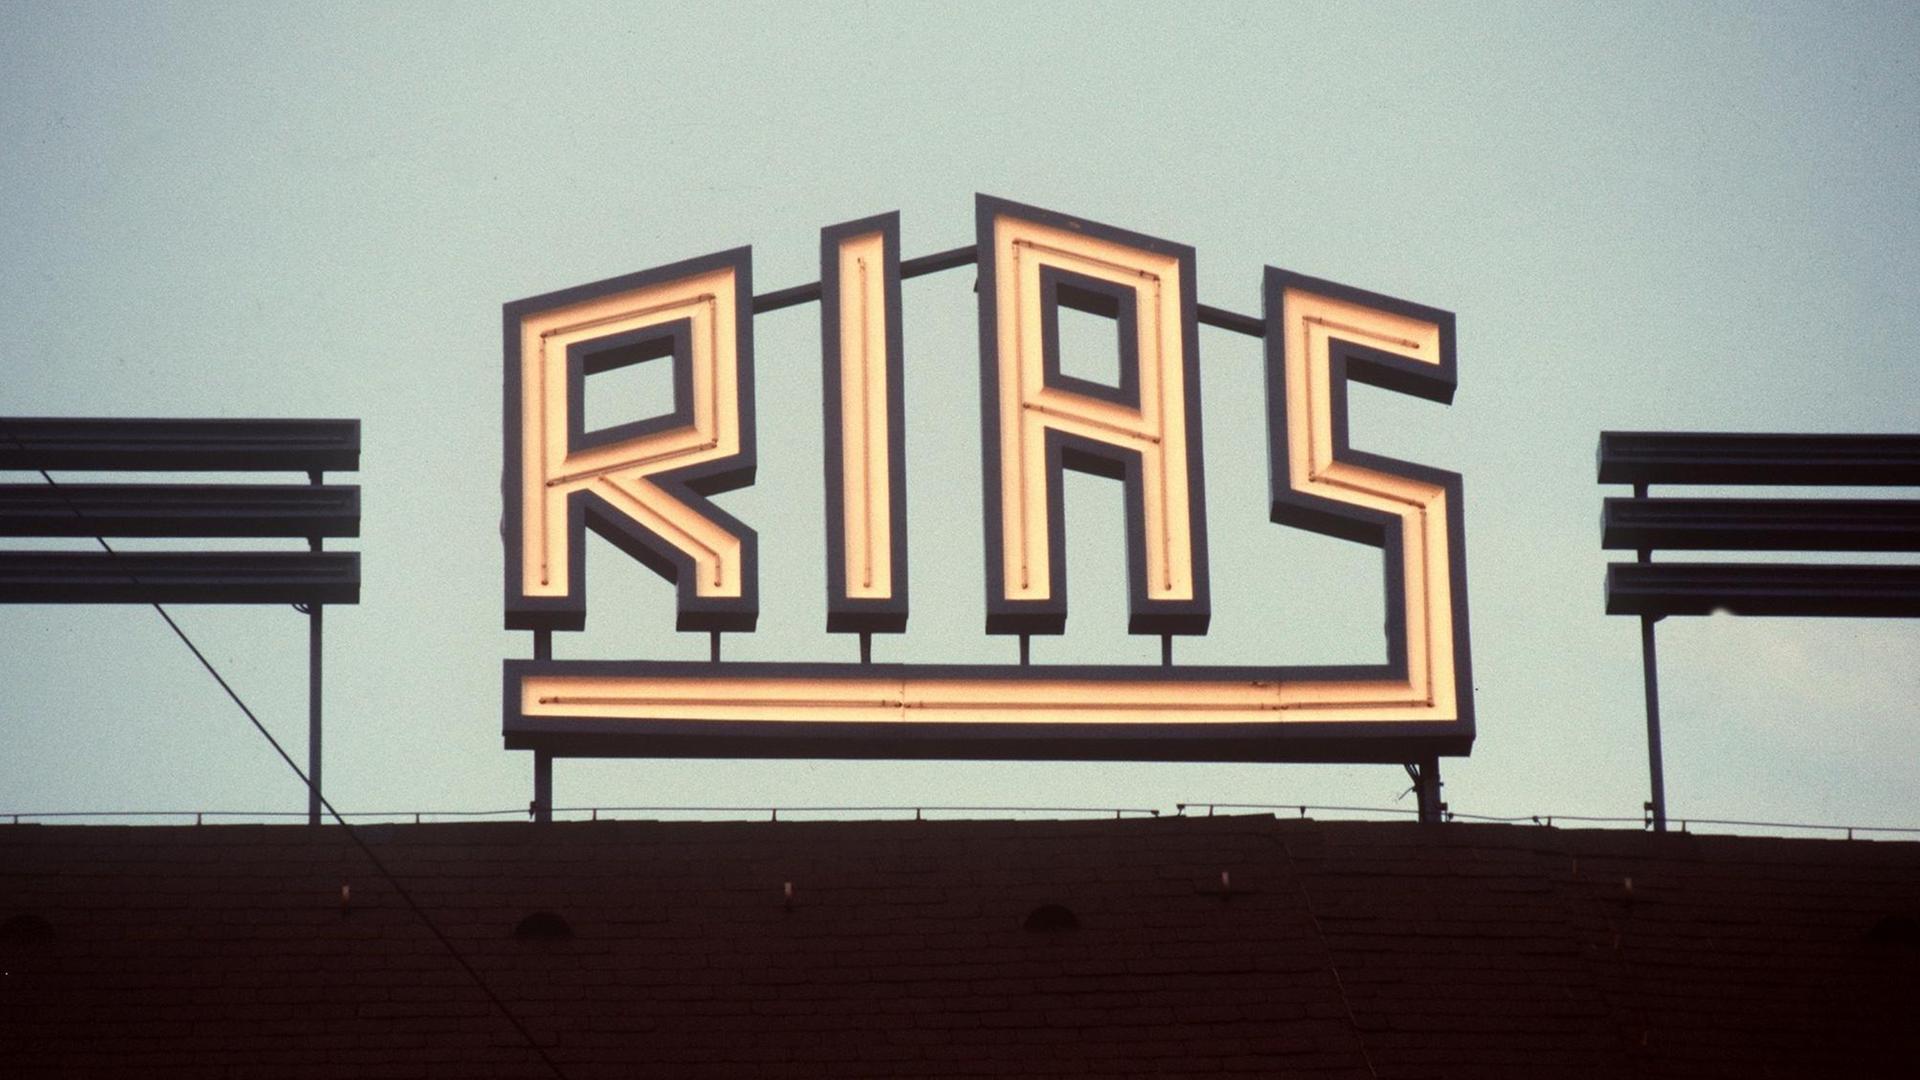 Das Logo des Rias Berlin auf dem Dach des Rundfunkhauses in Berlin-Schöneberg, aufgenommen am 24.10.1986.